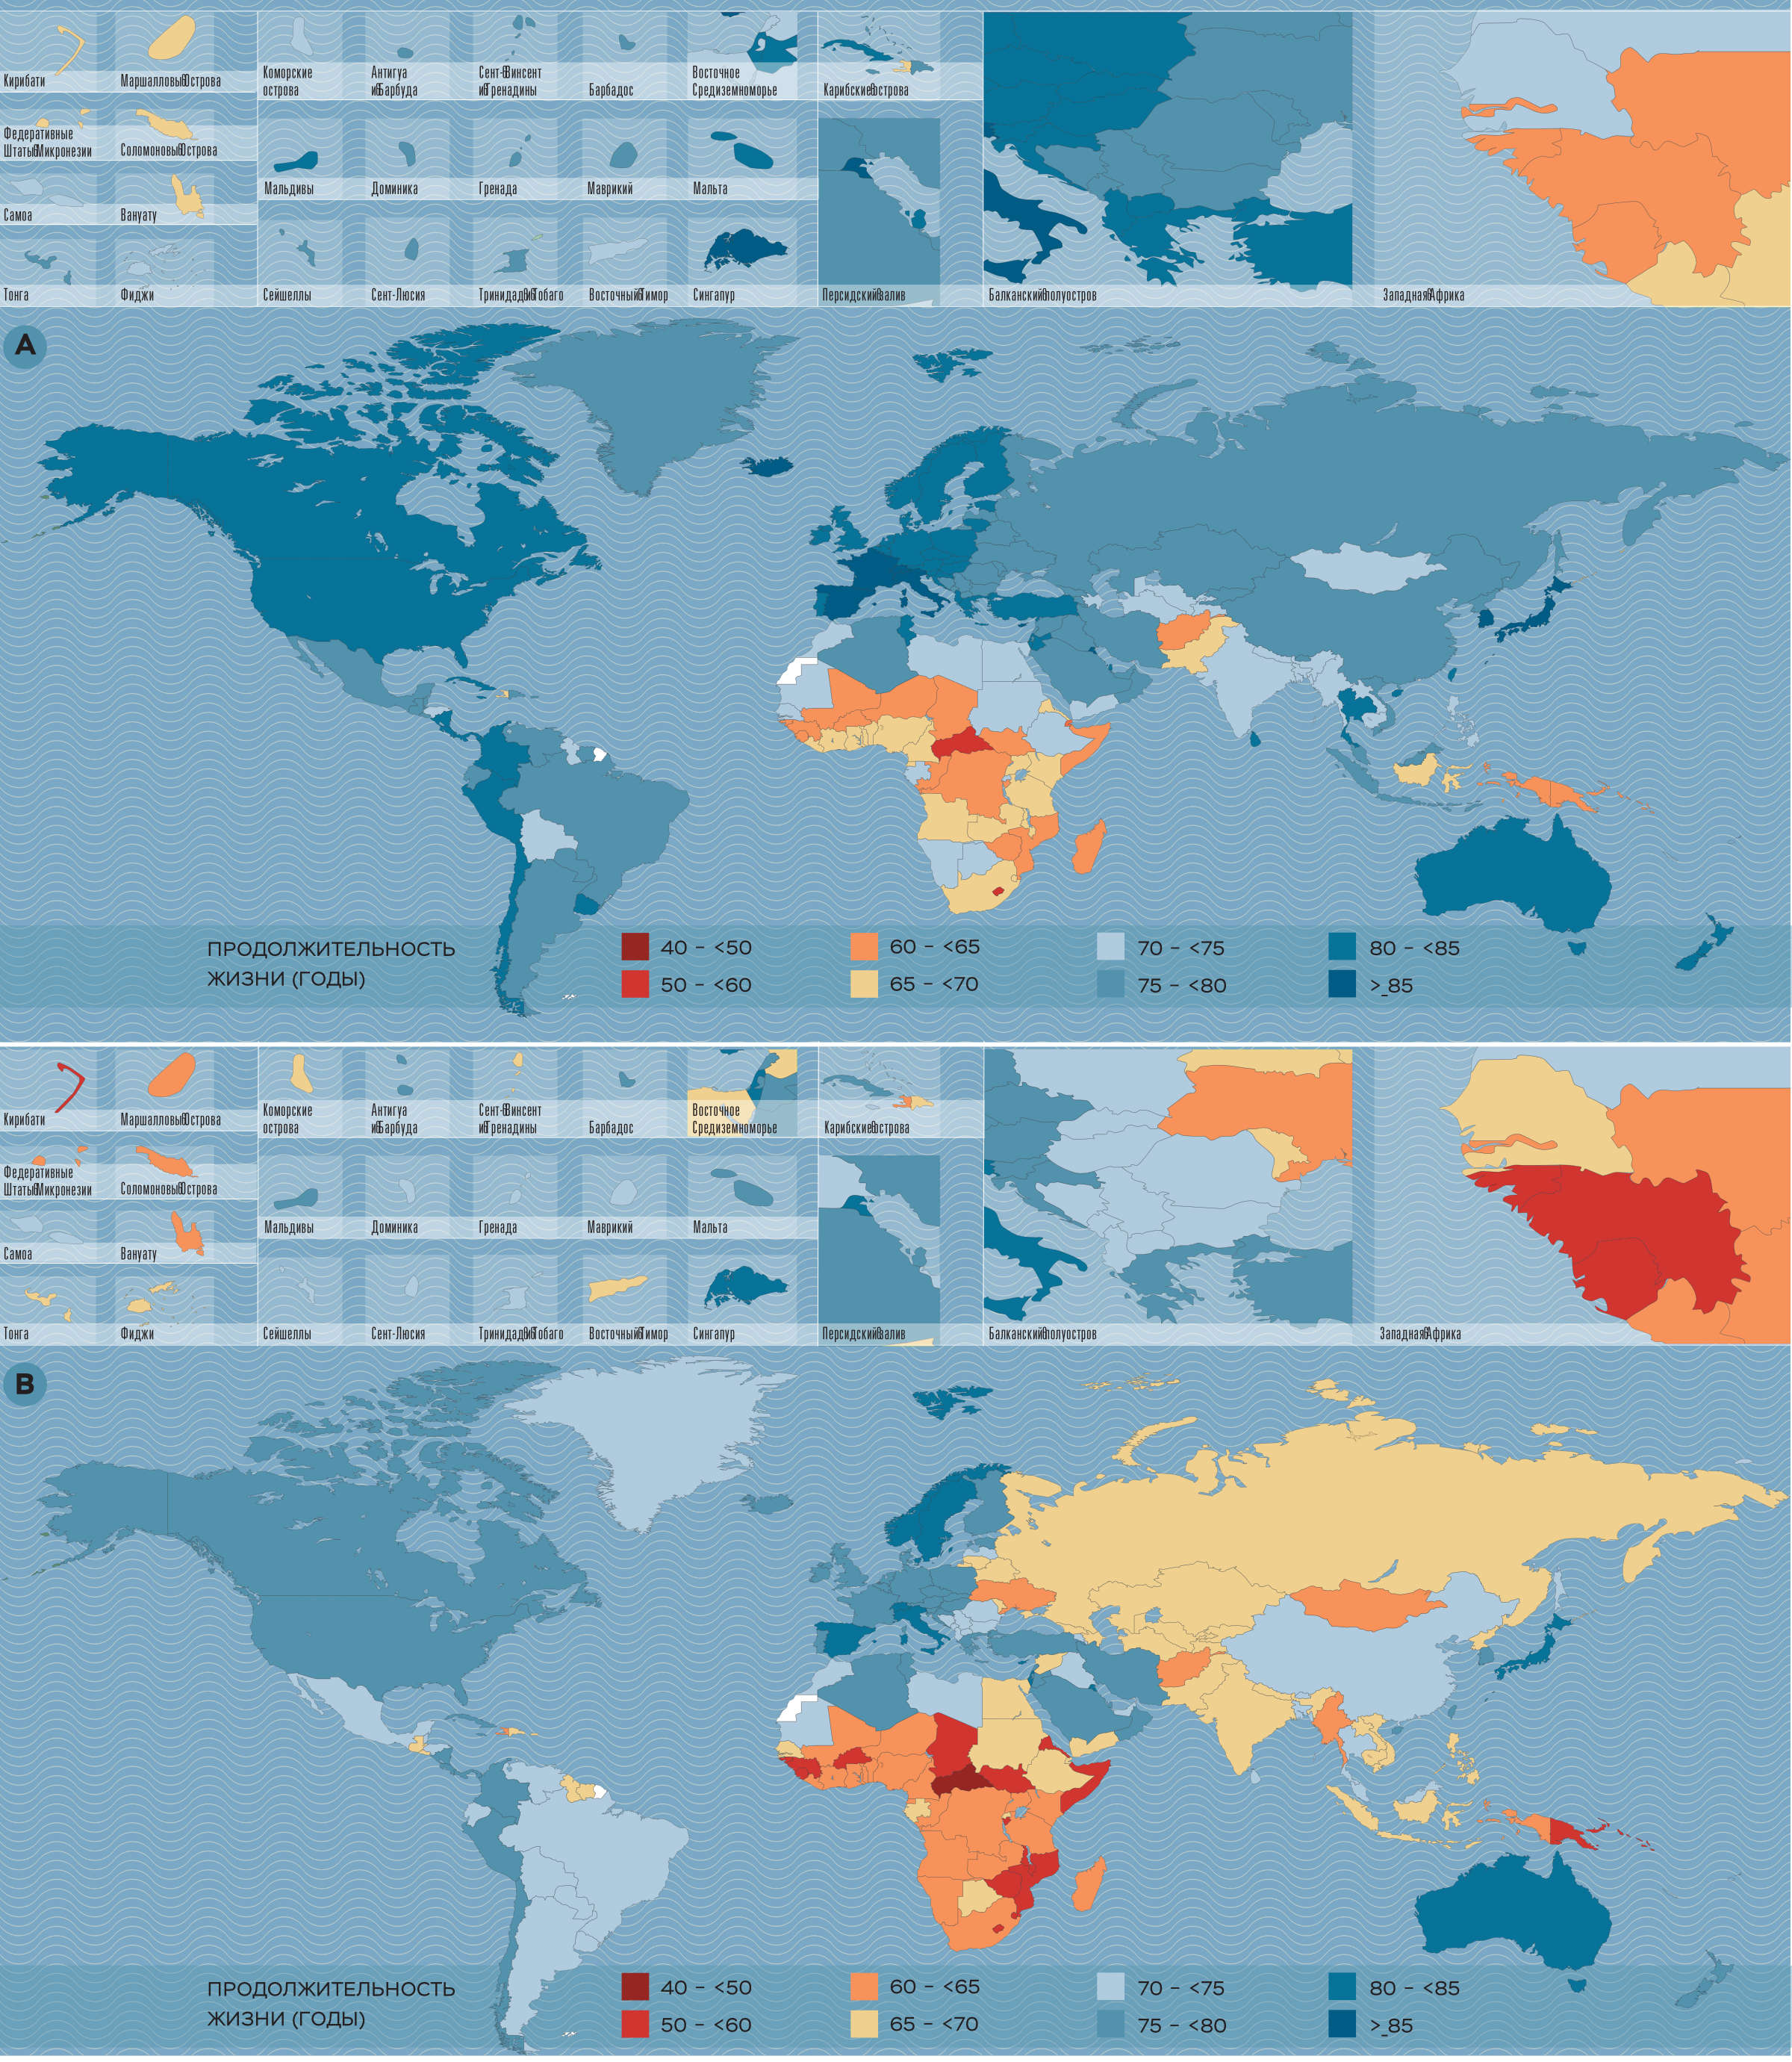 Рис. 1 Ожидаемая продолжительность жизни при рождении для женщин (А) и для мужчин (В)
по странам в 2017 году